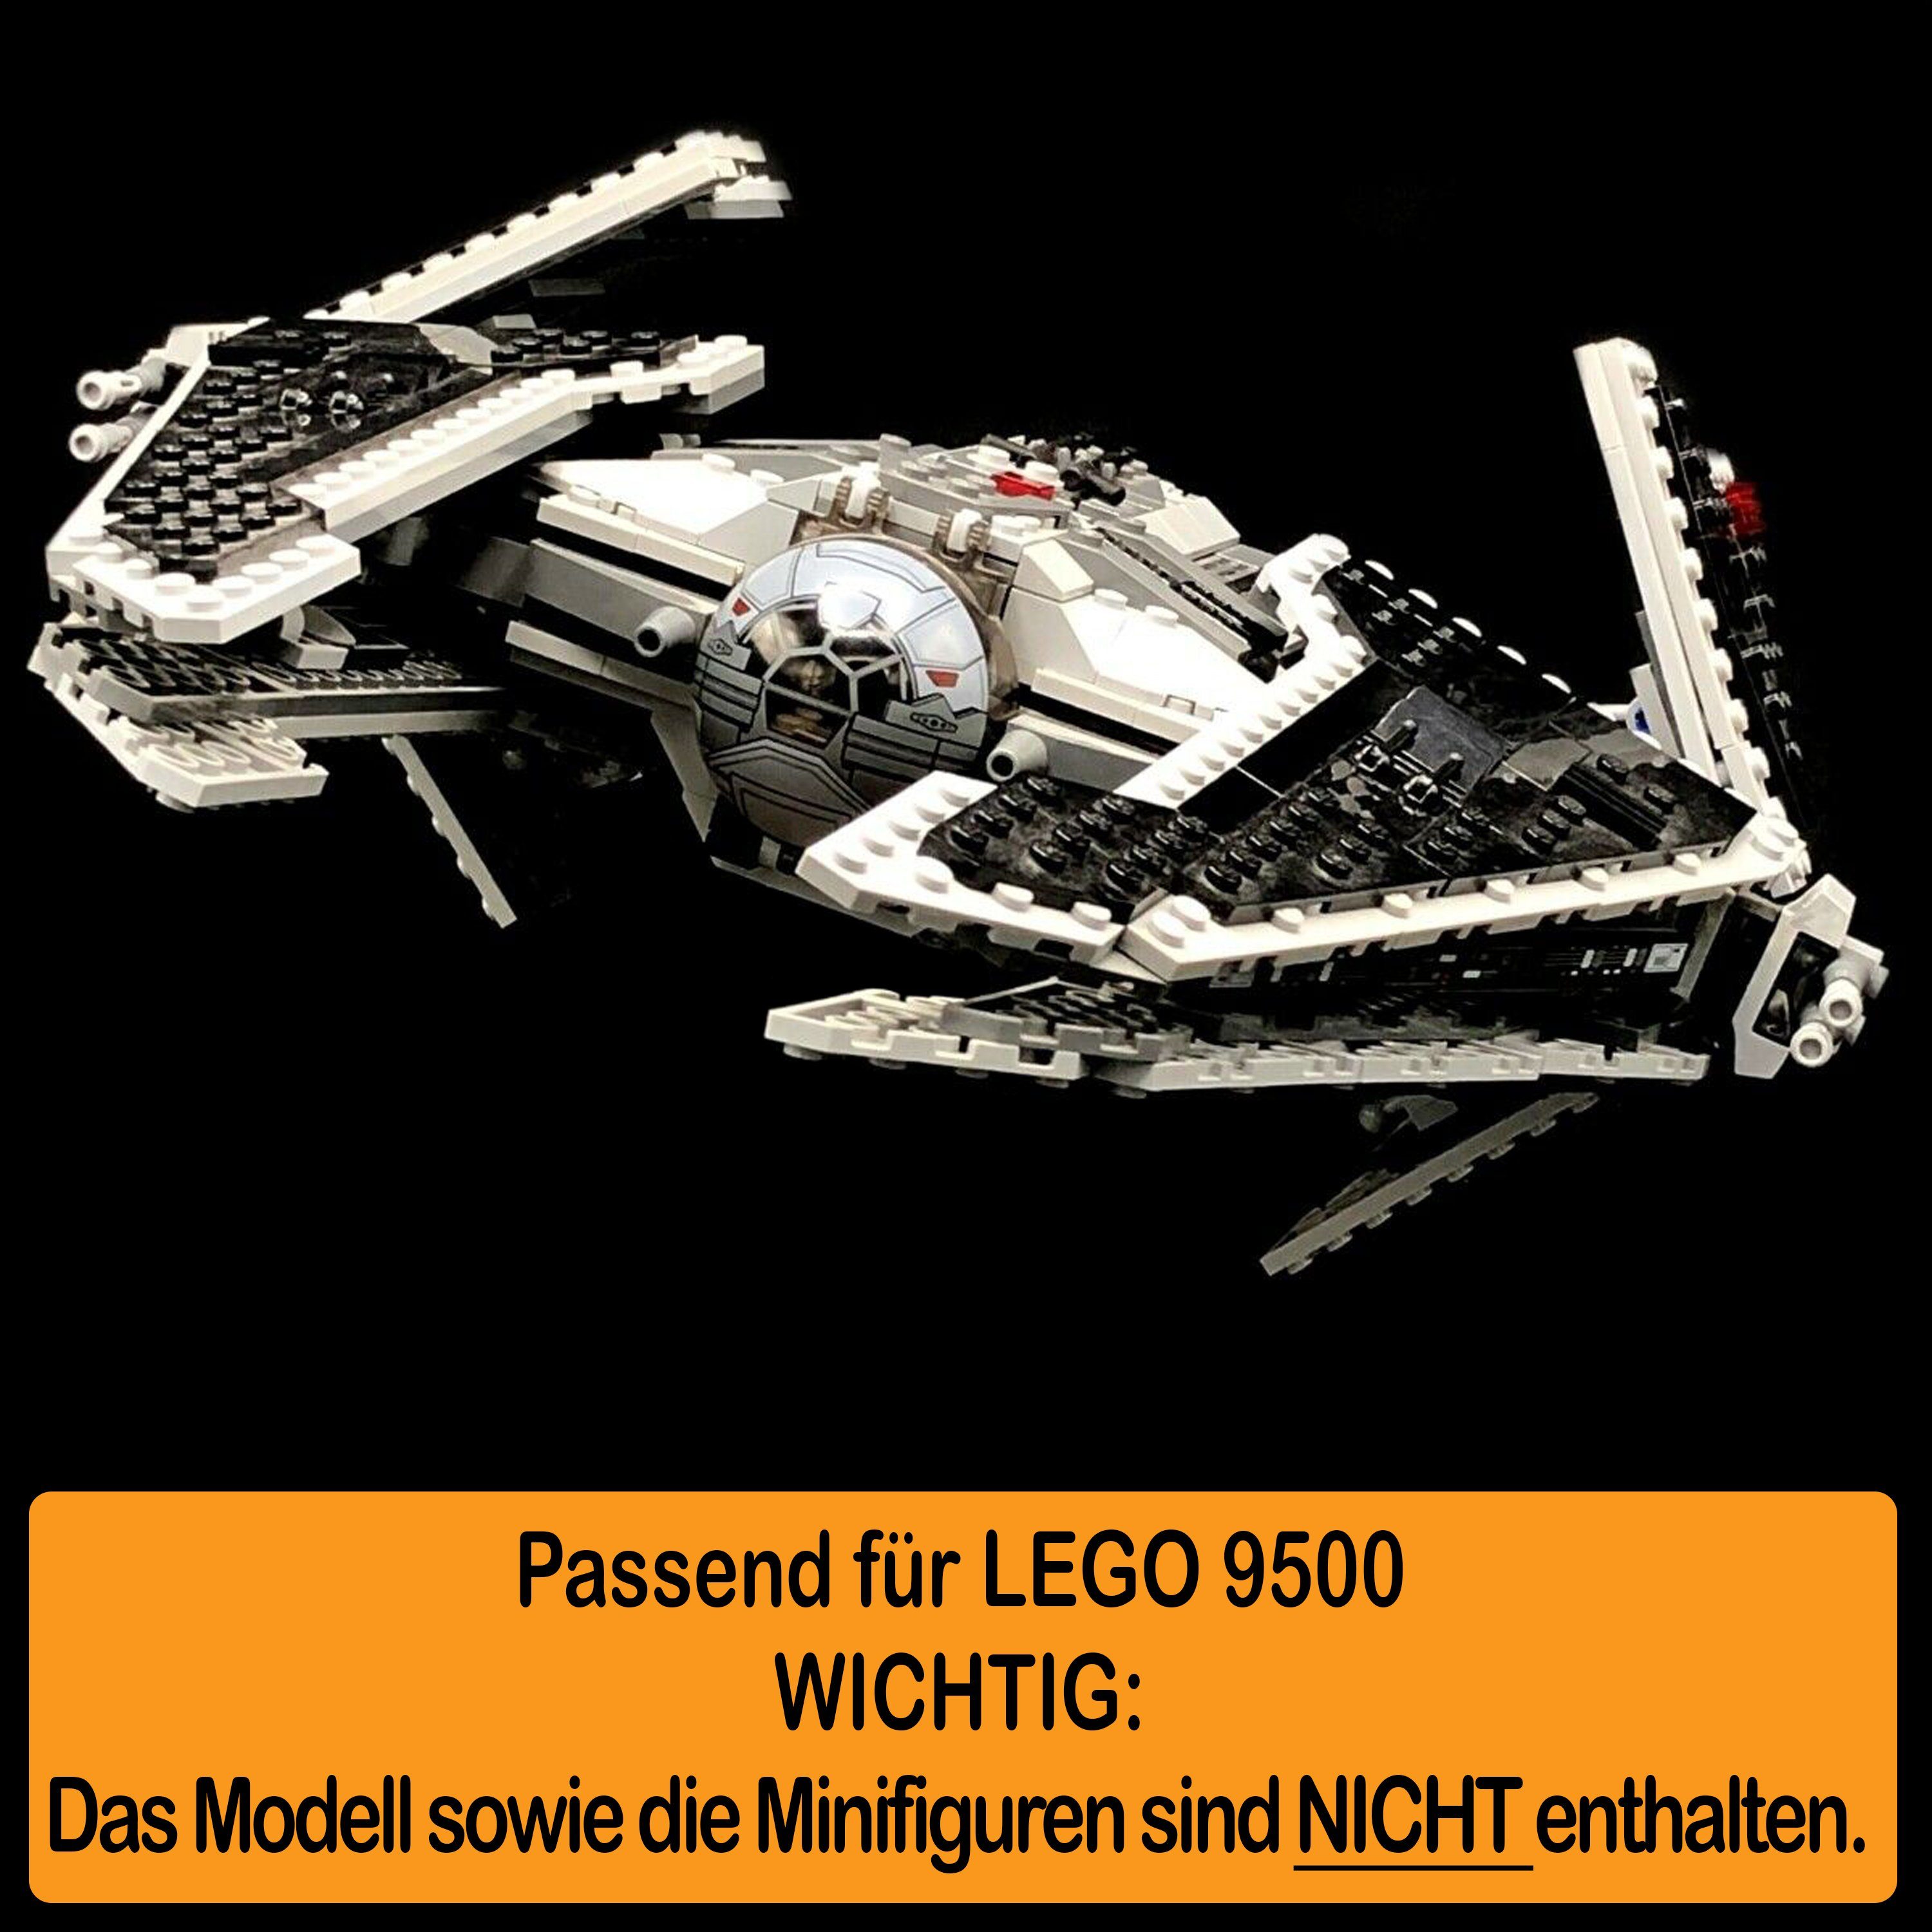 AREA17 Standfuß Sith Acryl und Stand Positionen Made Interceptor Fury in Germany LEGO Winkel zusammenbauen), für (verschiedene Display 9500 class zum einstellbar, 100% selbst